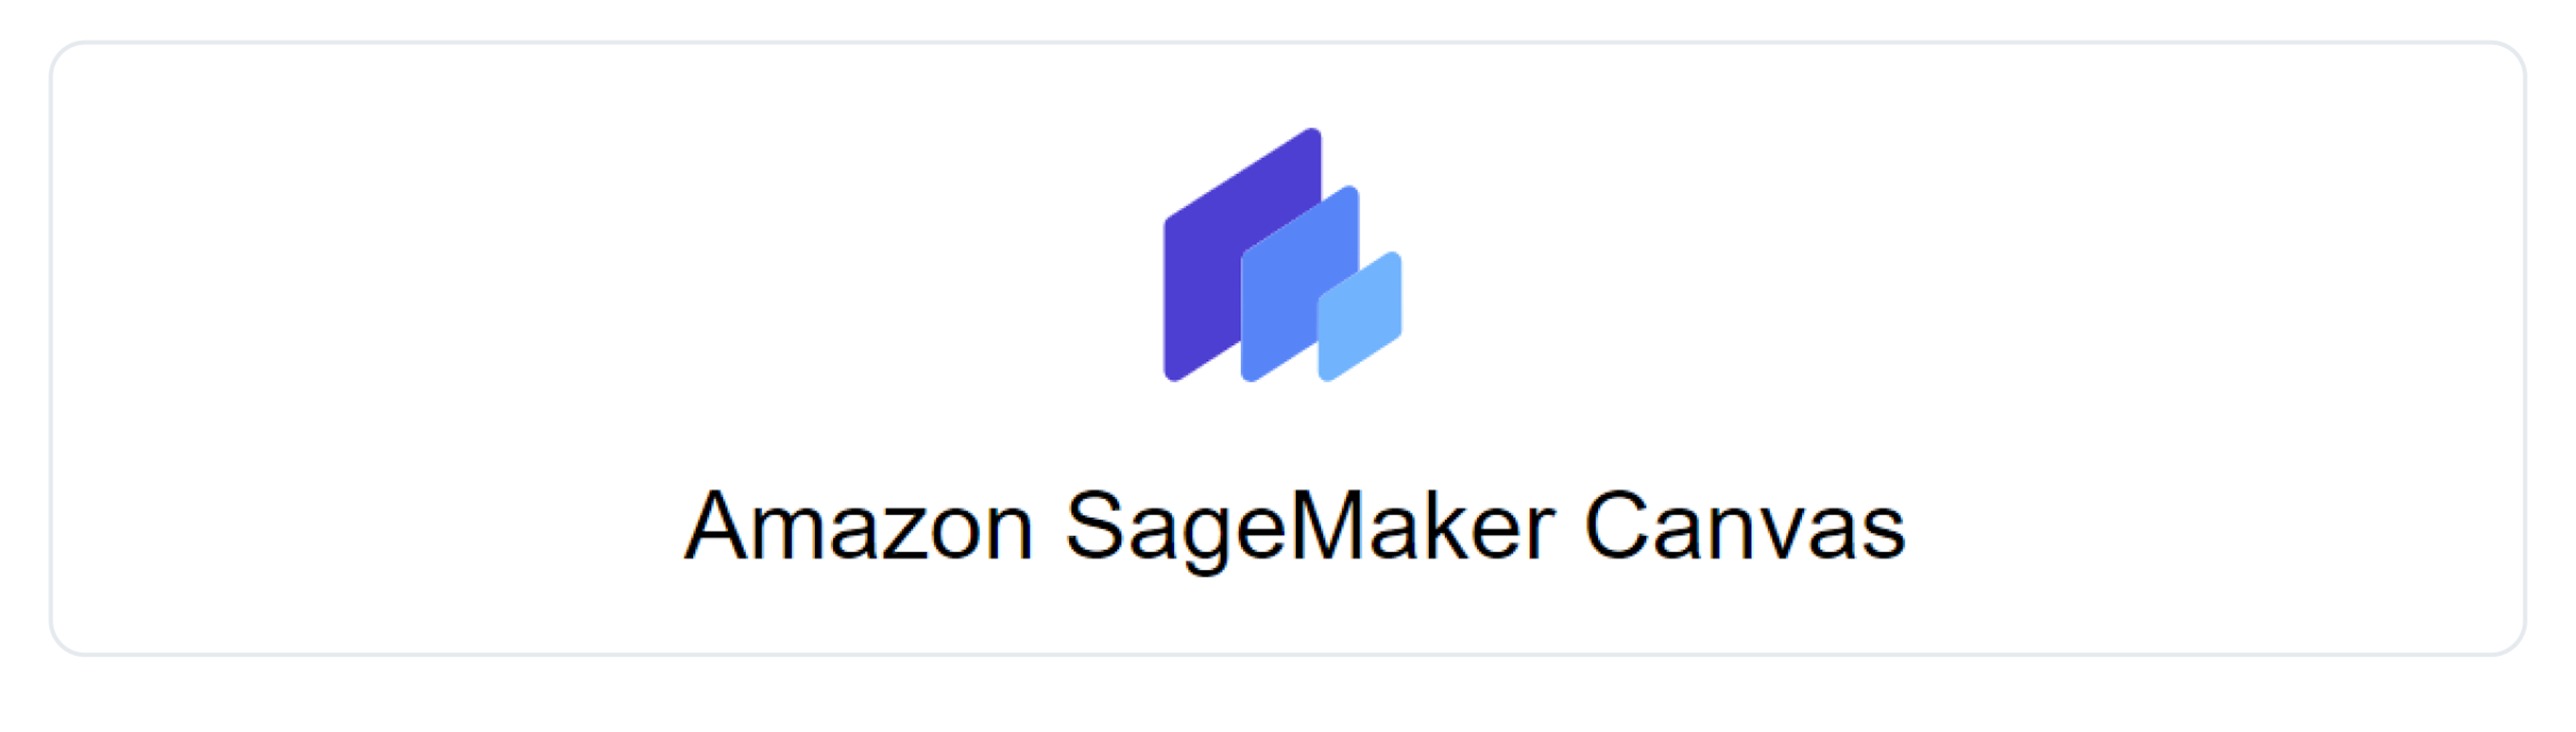 Sage Maker Canvas logo.